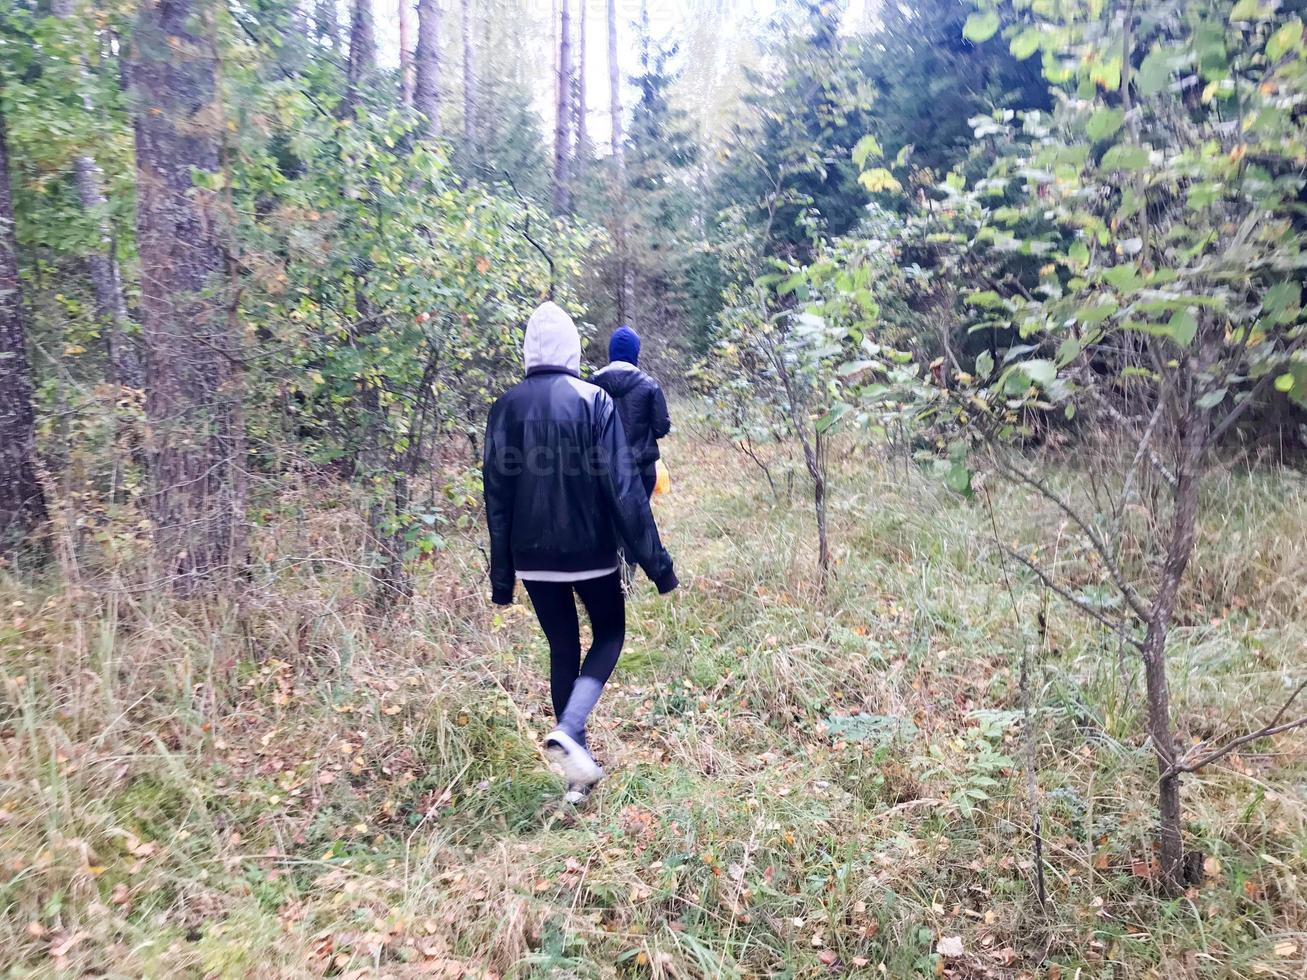 les gens, les cueilleurs de champignons dans des vêtements chauds marchent dans une randonnée à travers la forêt d'automne avec des arbres dans la nature le long de l'herbe et des feuilles photo